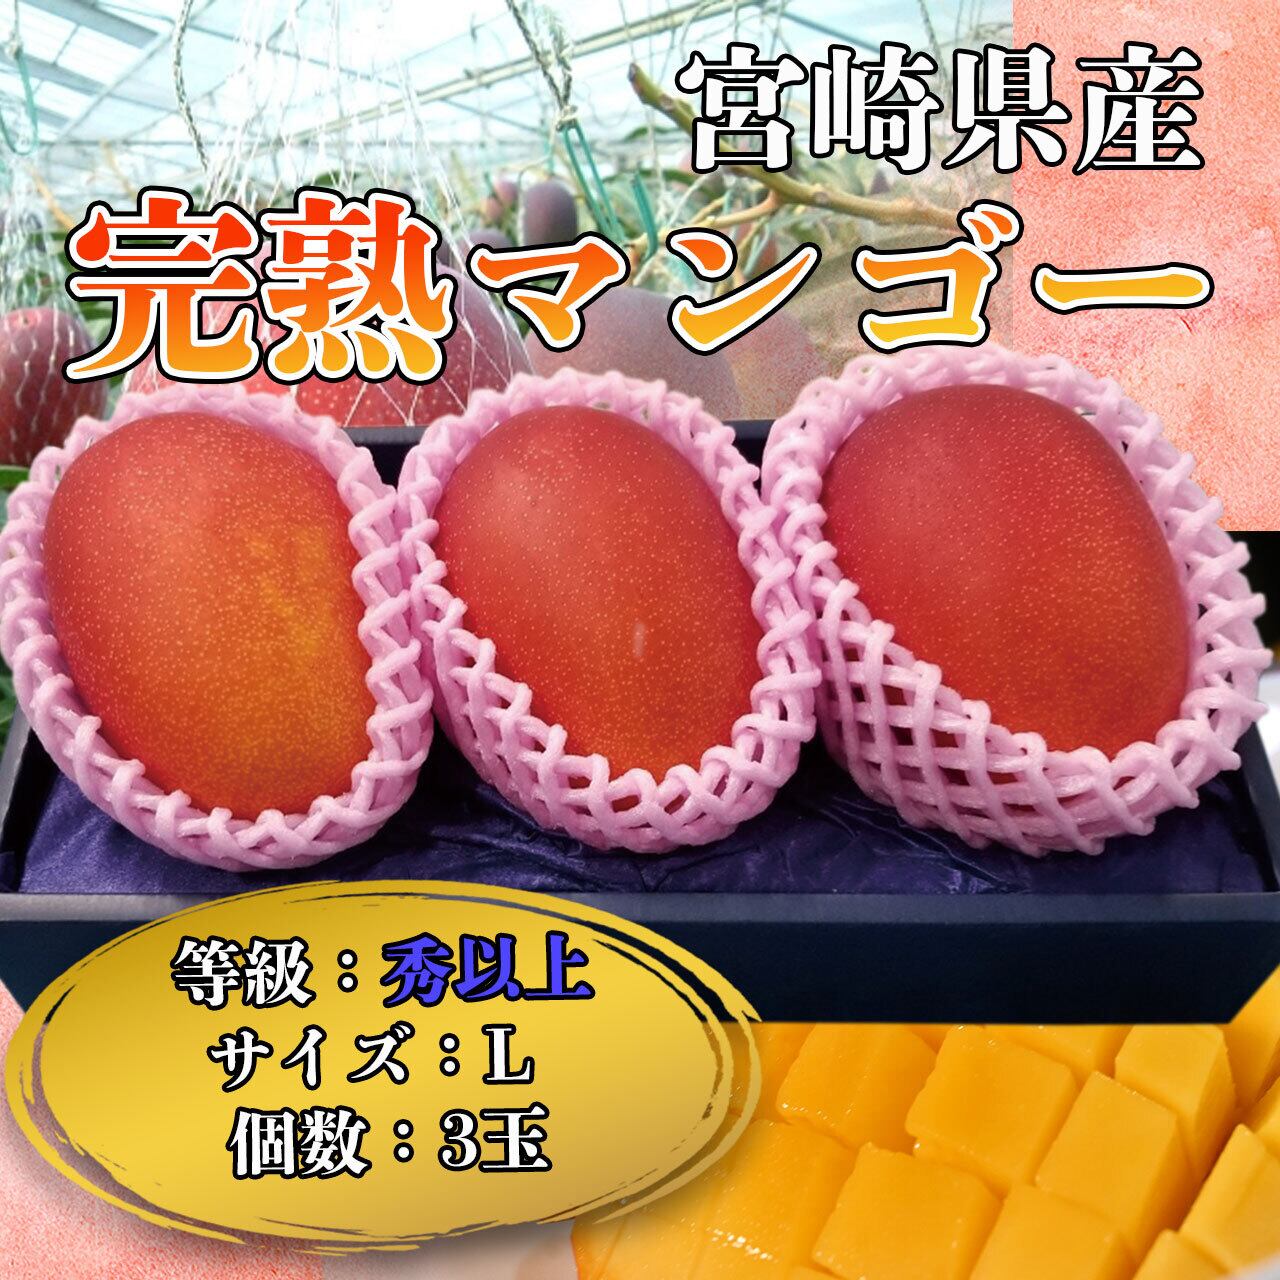 贈り物に】大田市場特選 宮崎産完熟マンゴー L 3玉 化粧箱入 ギフト